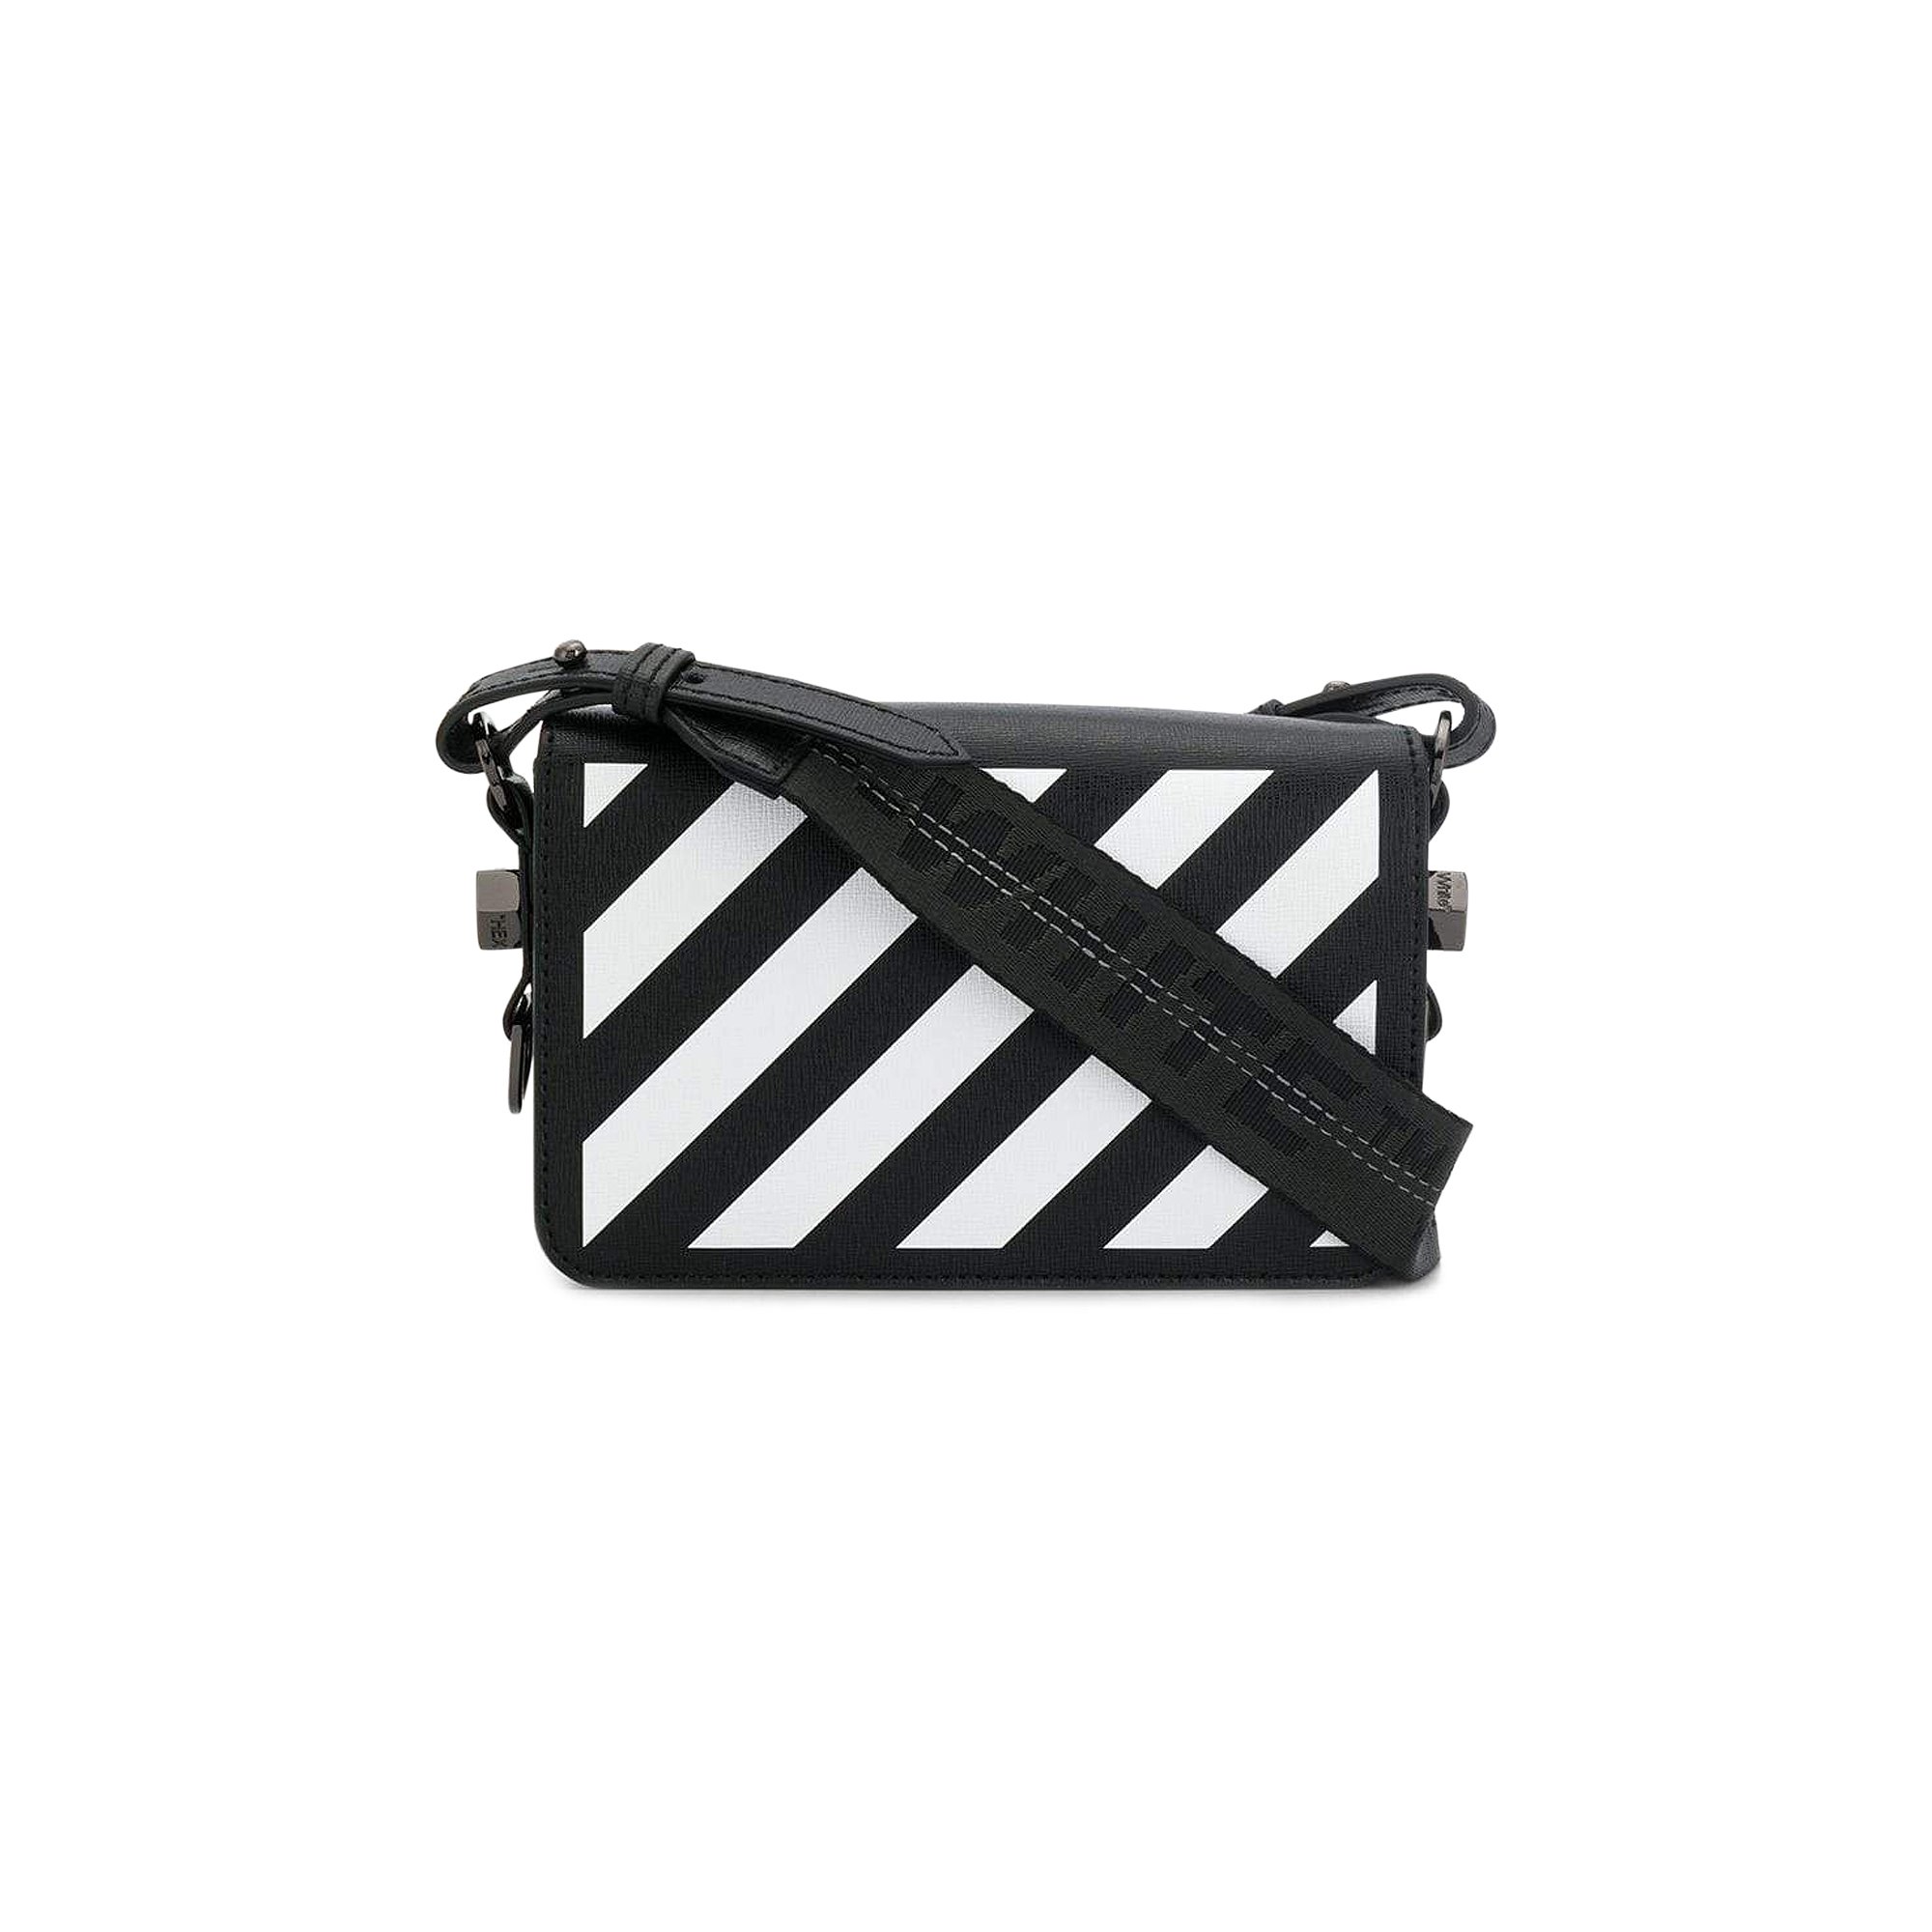 Buy Off-White Diag Mini Flap Bag 'Black' - OWNA038E194231071001 | GOAT